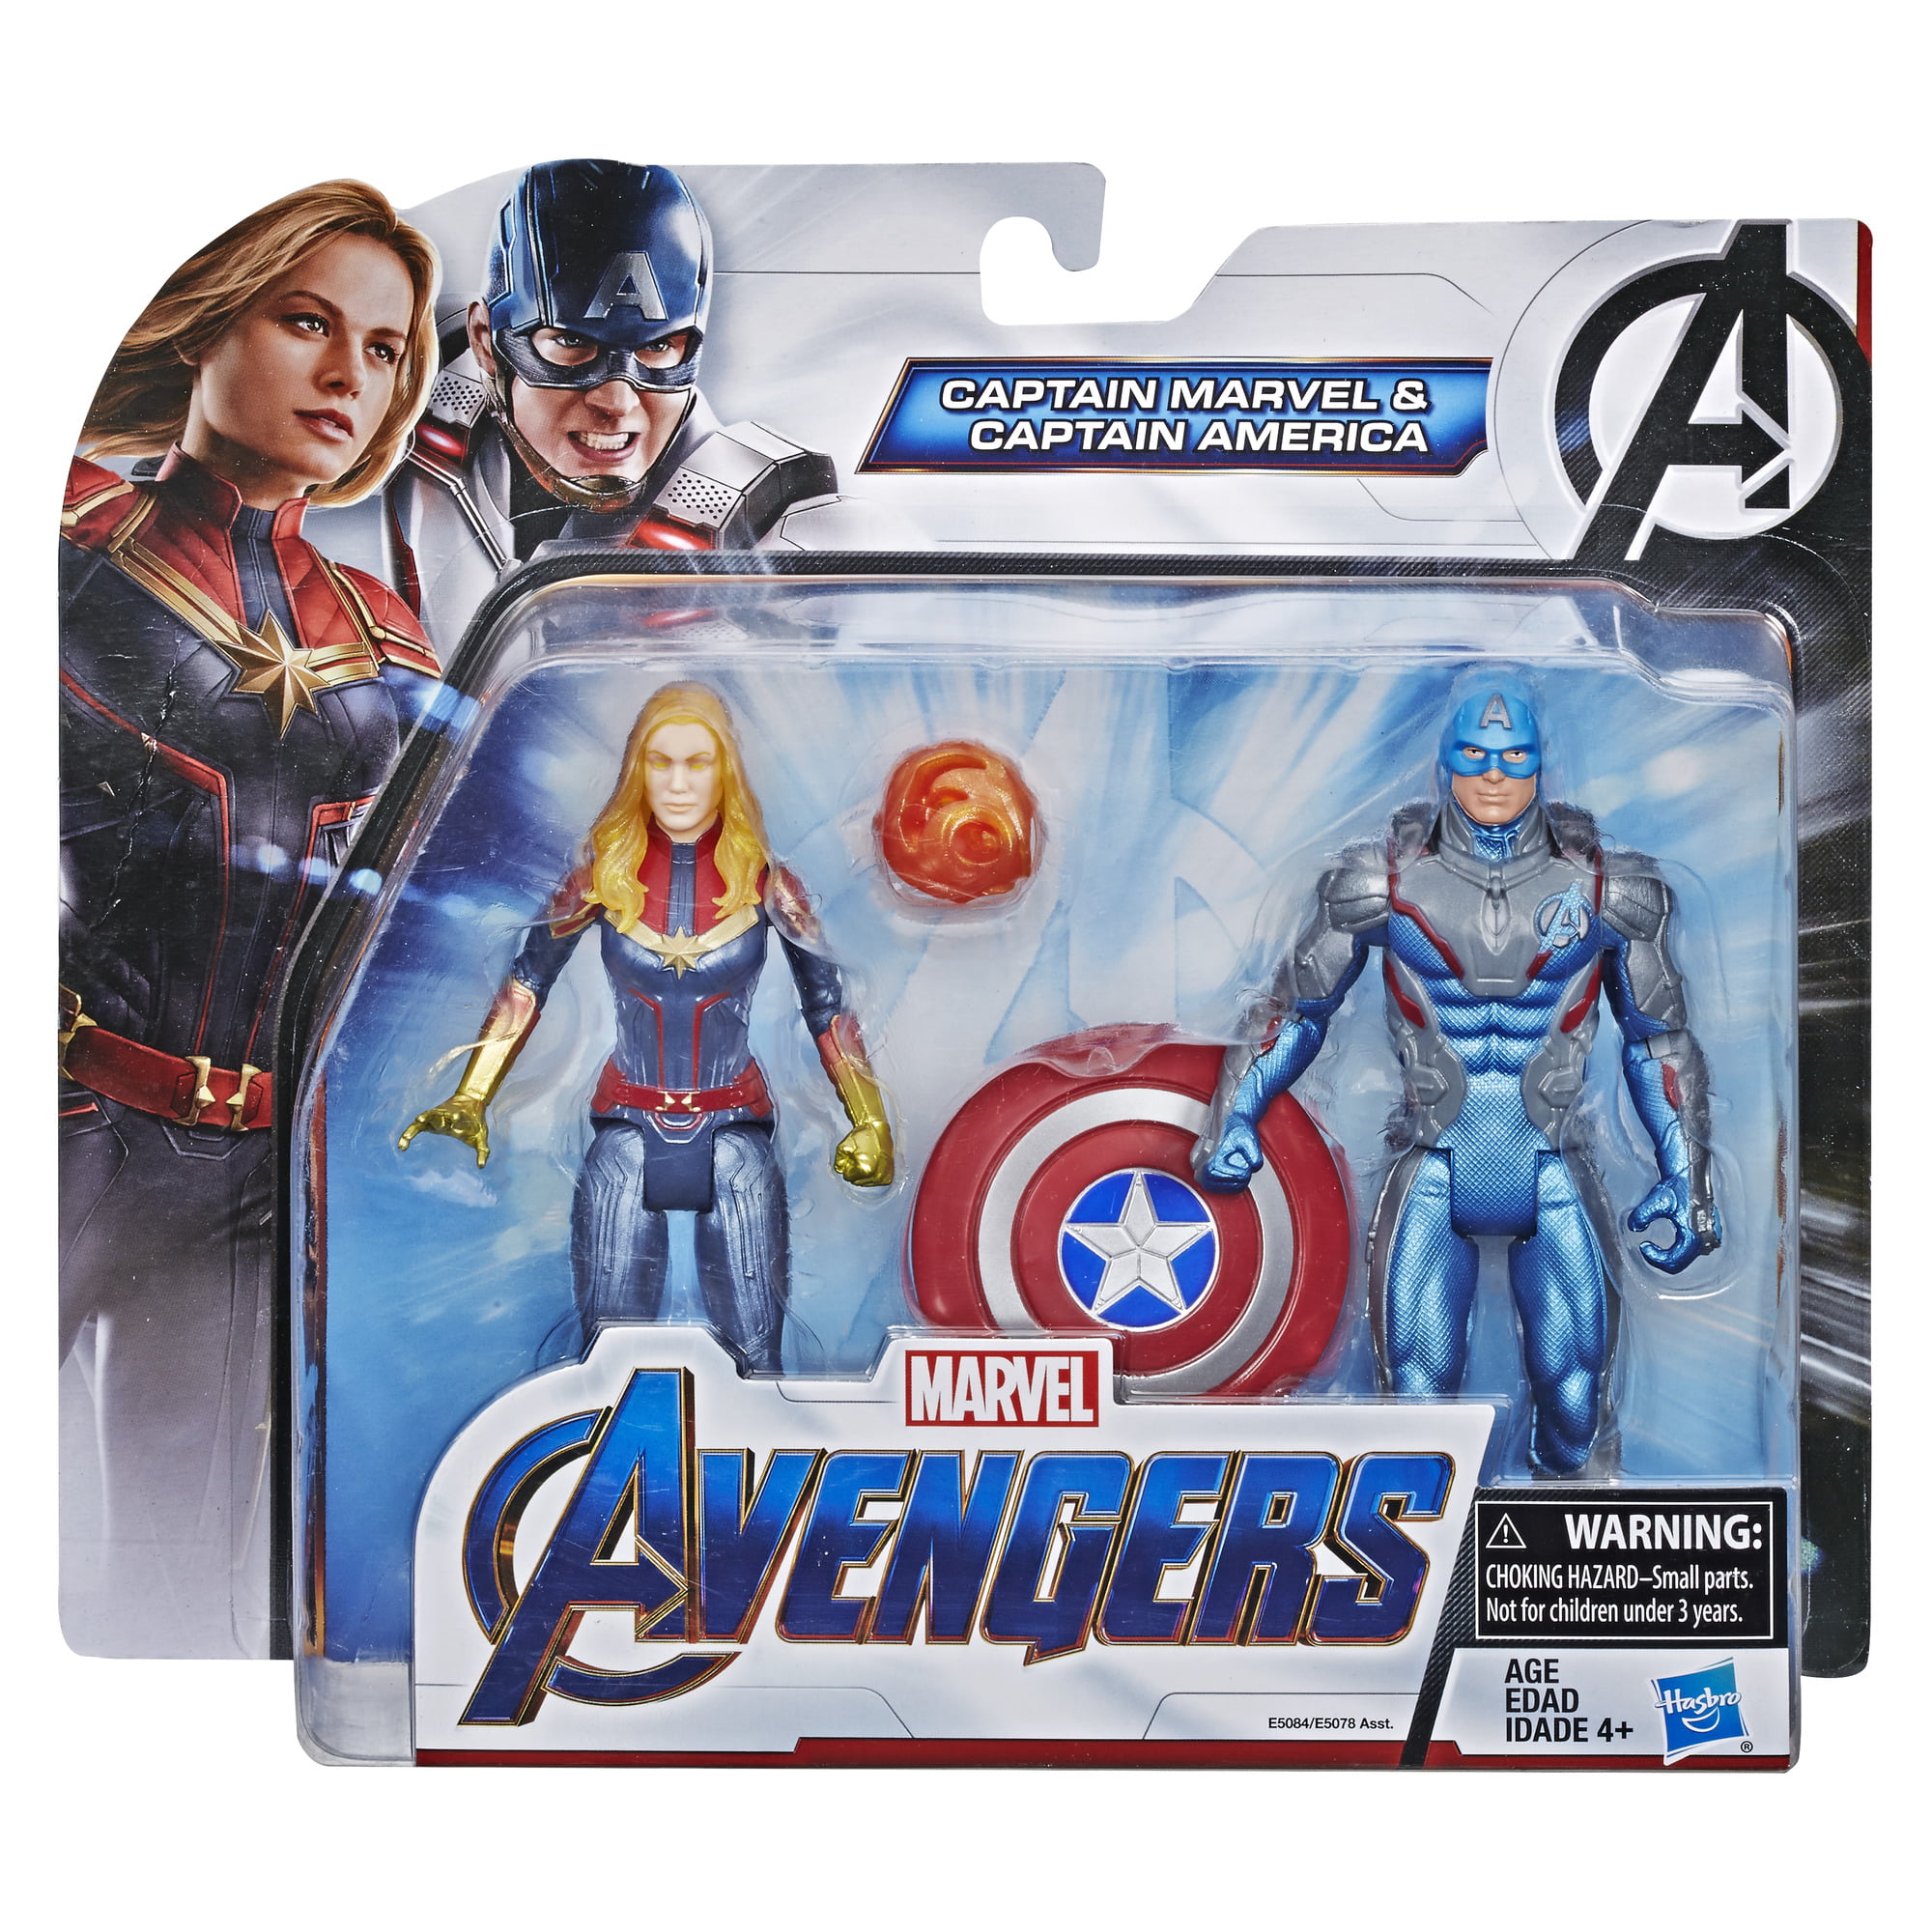 Marvel Comics The Avengers Endgame Plush Captain America Movie Soft Doll 9" New 